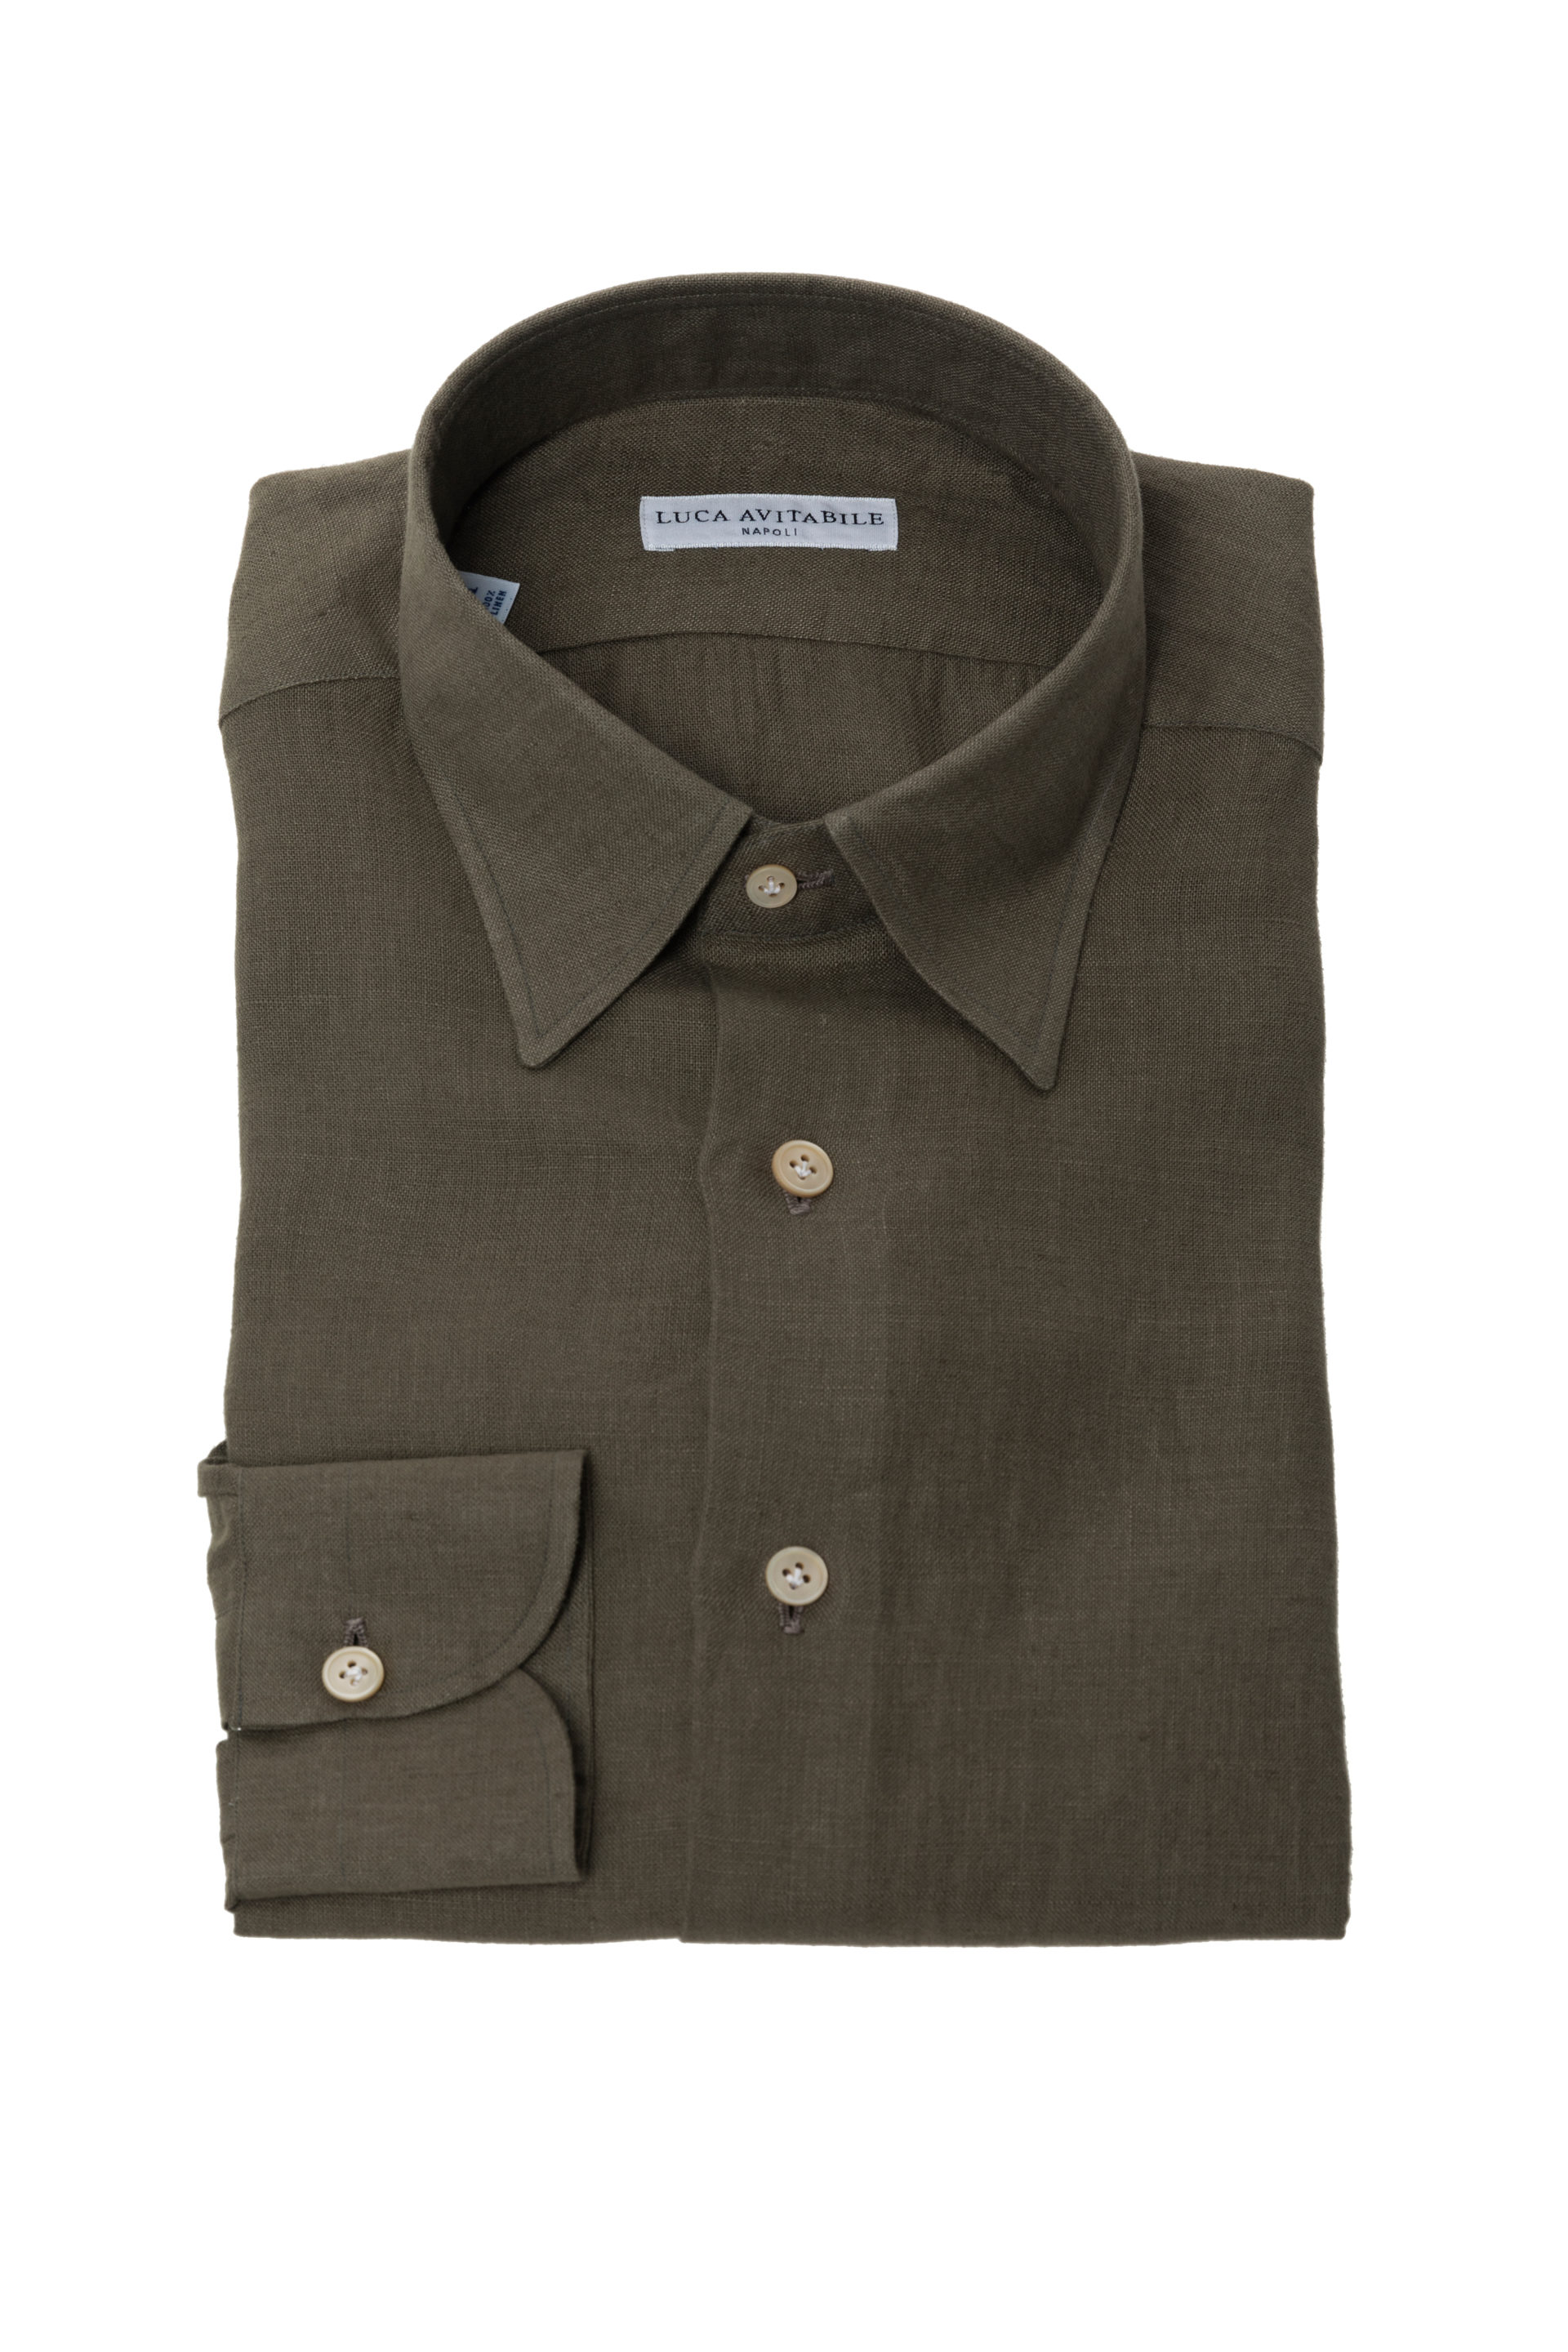 Primavera - Khaki Irish Linen Shirt - Luca Avitabile - Handmade Shirt